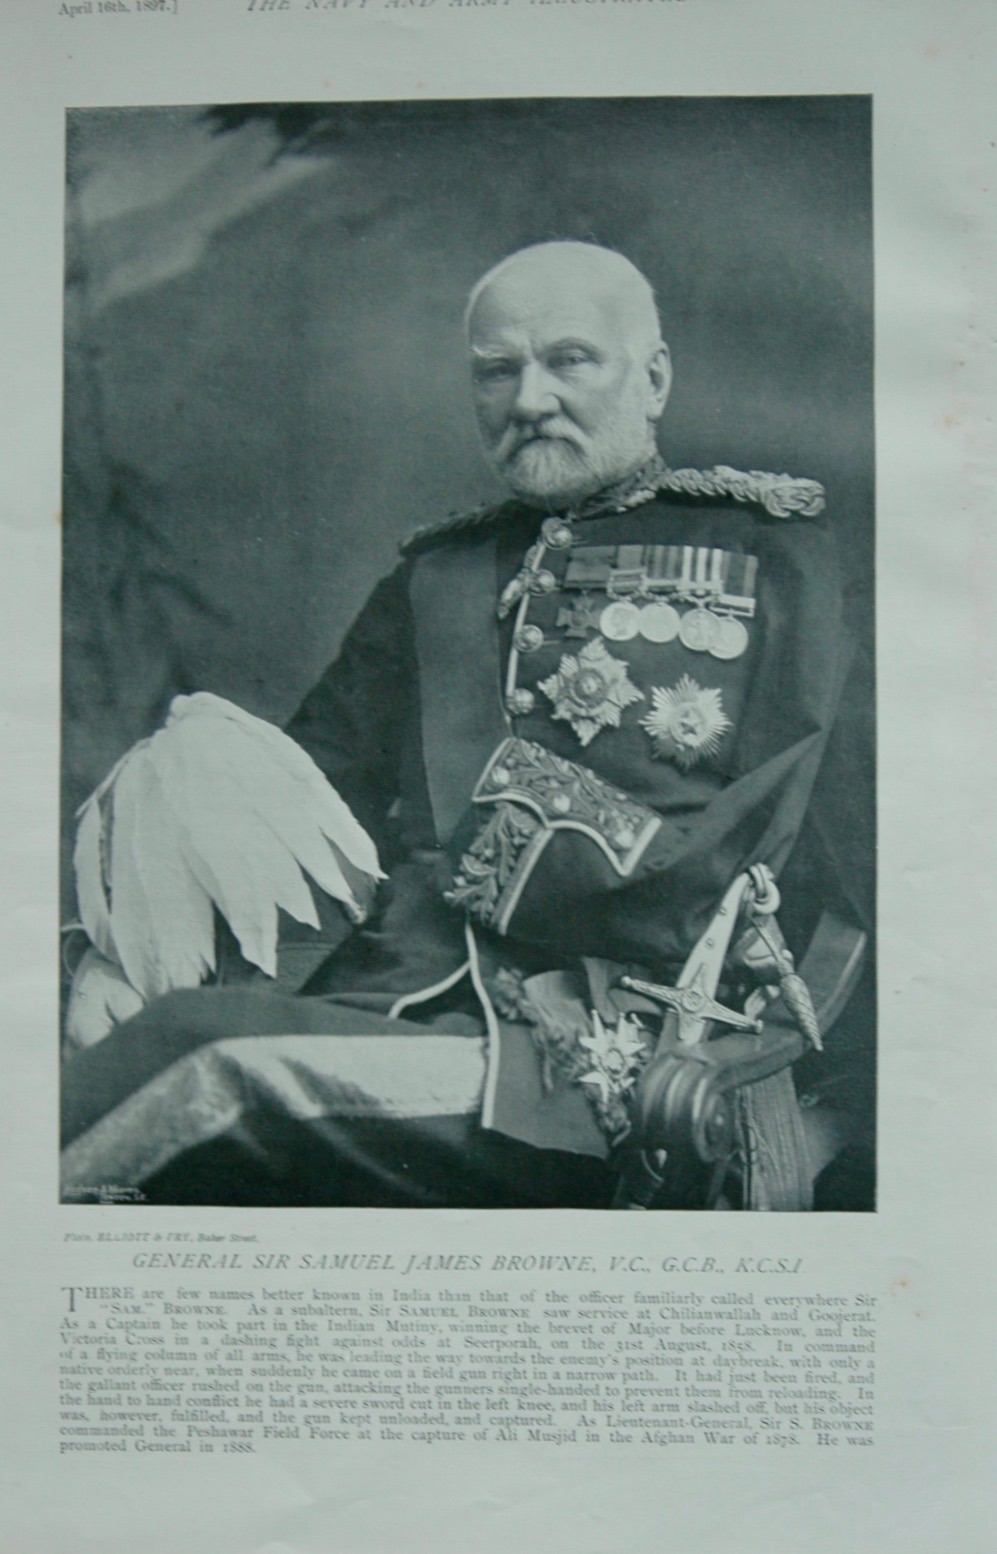 General Sir Samuel James Browne - 1897